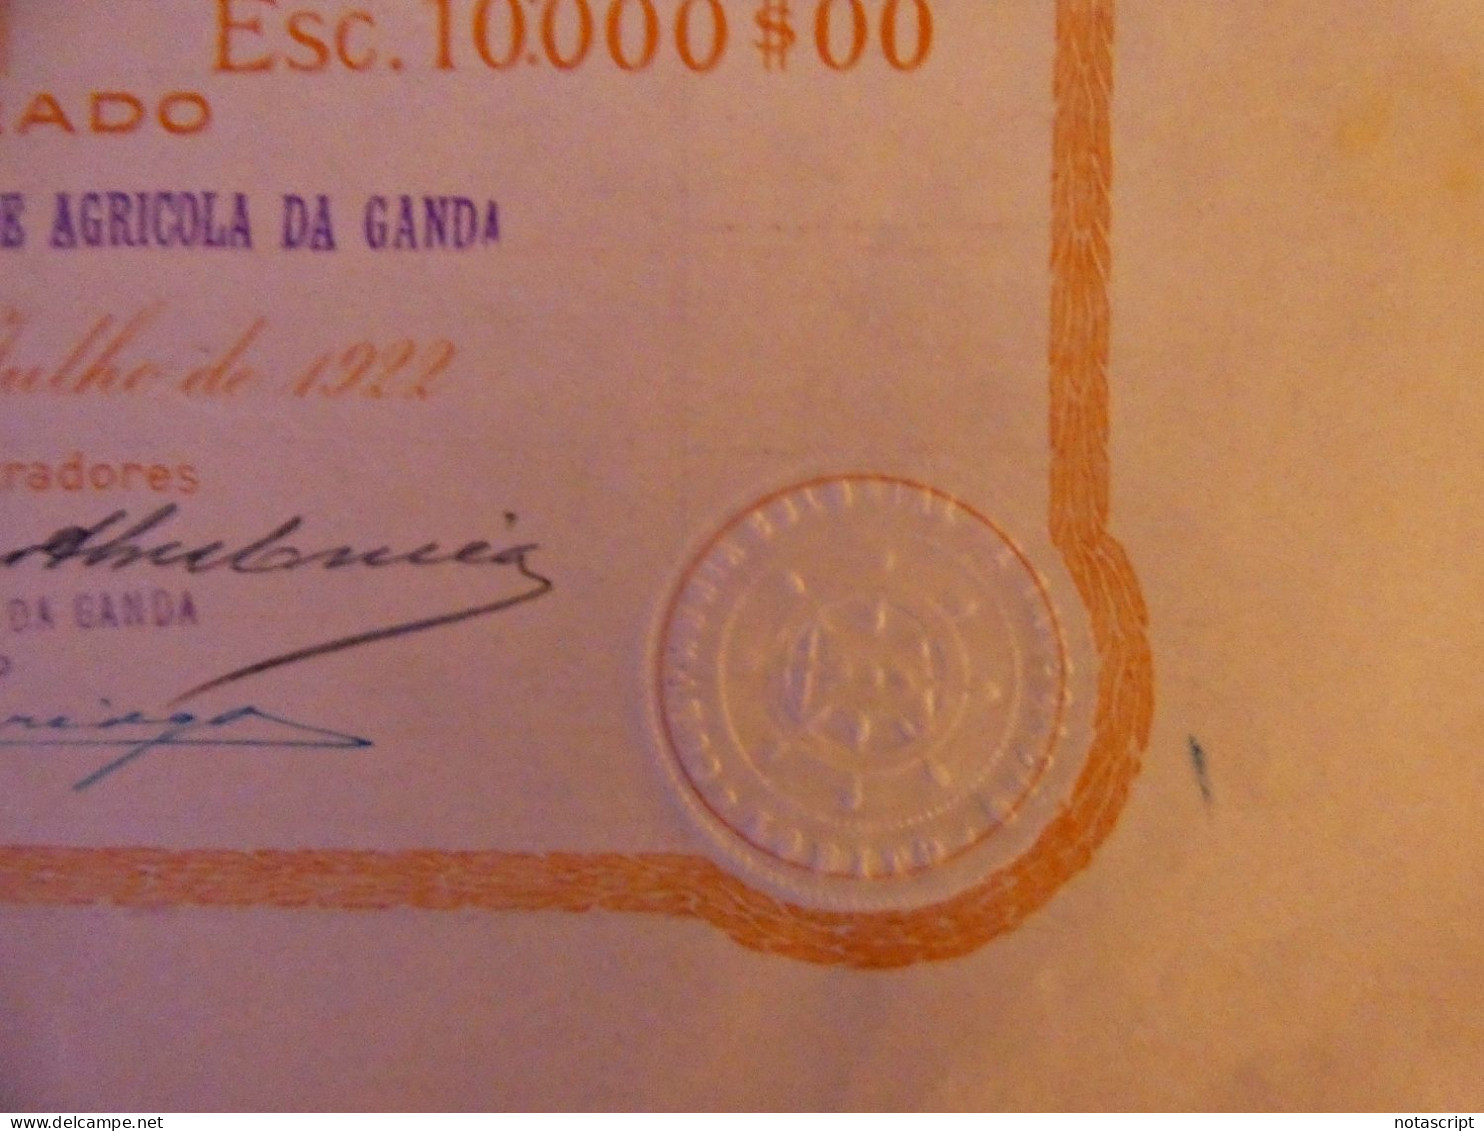 COMPANHIA COLONIAL  DE NAVEGAÇAO SA ,Lobito (Portuguese Angola)    1922 share Certificate - Navigation